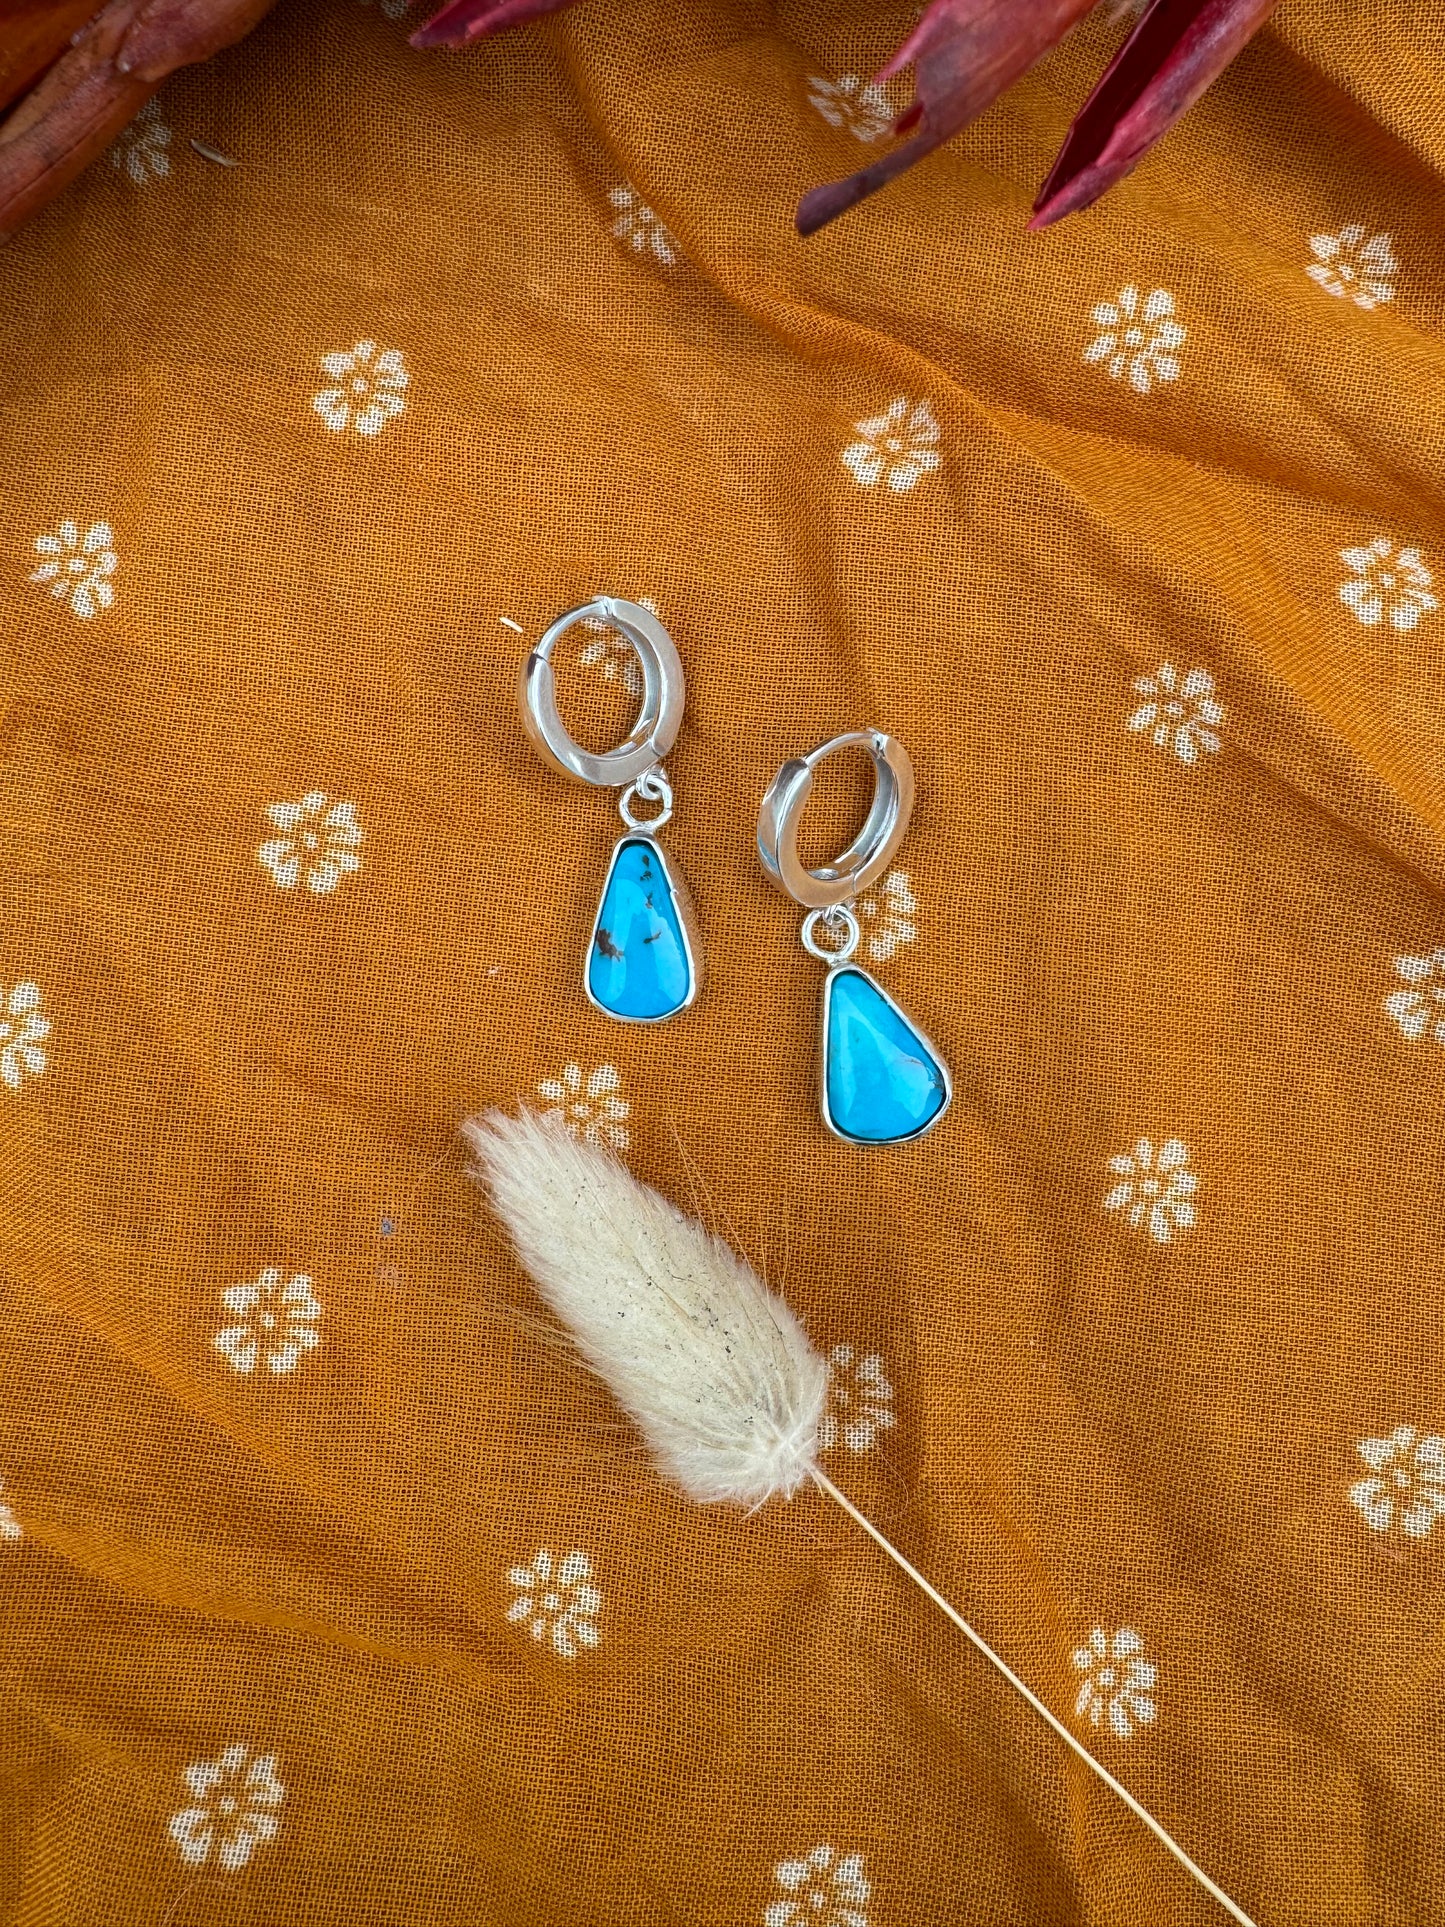 Egyptian Turquoise Earrings